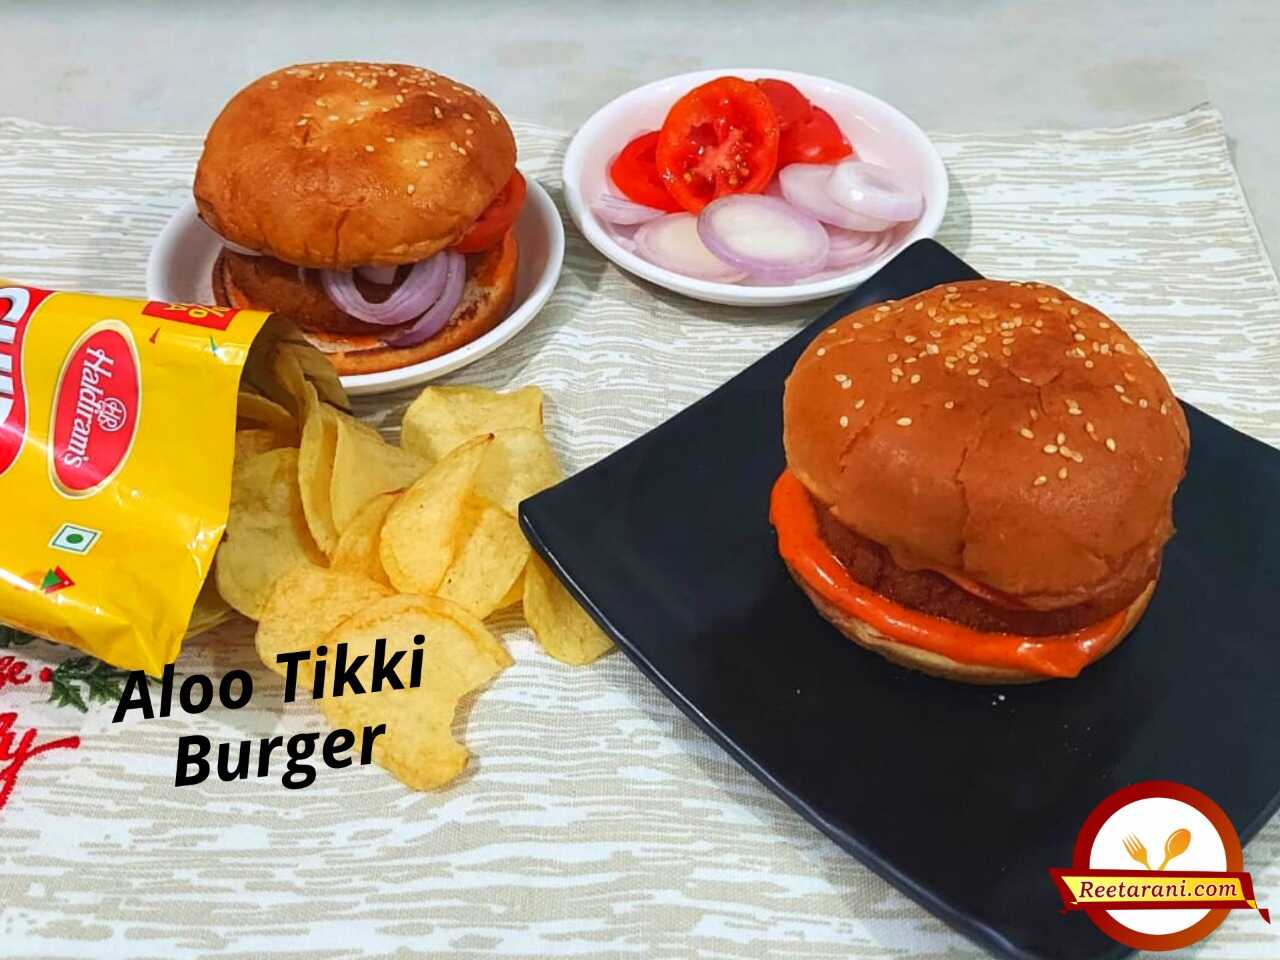 burger king aloo tikki burger